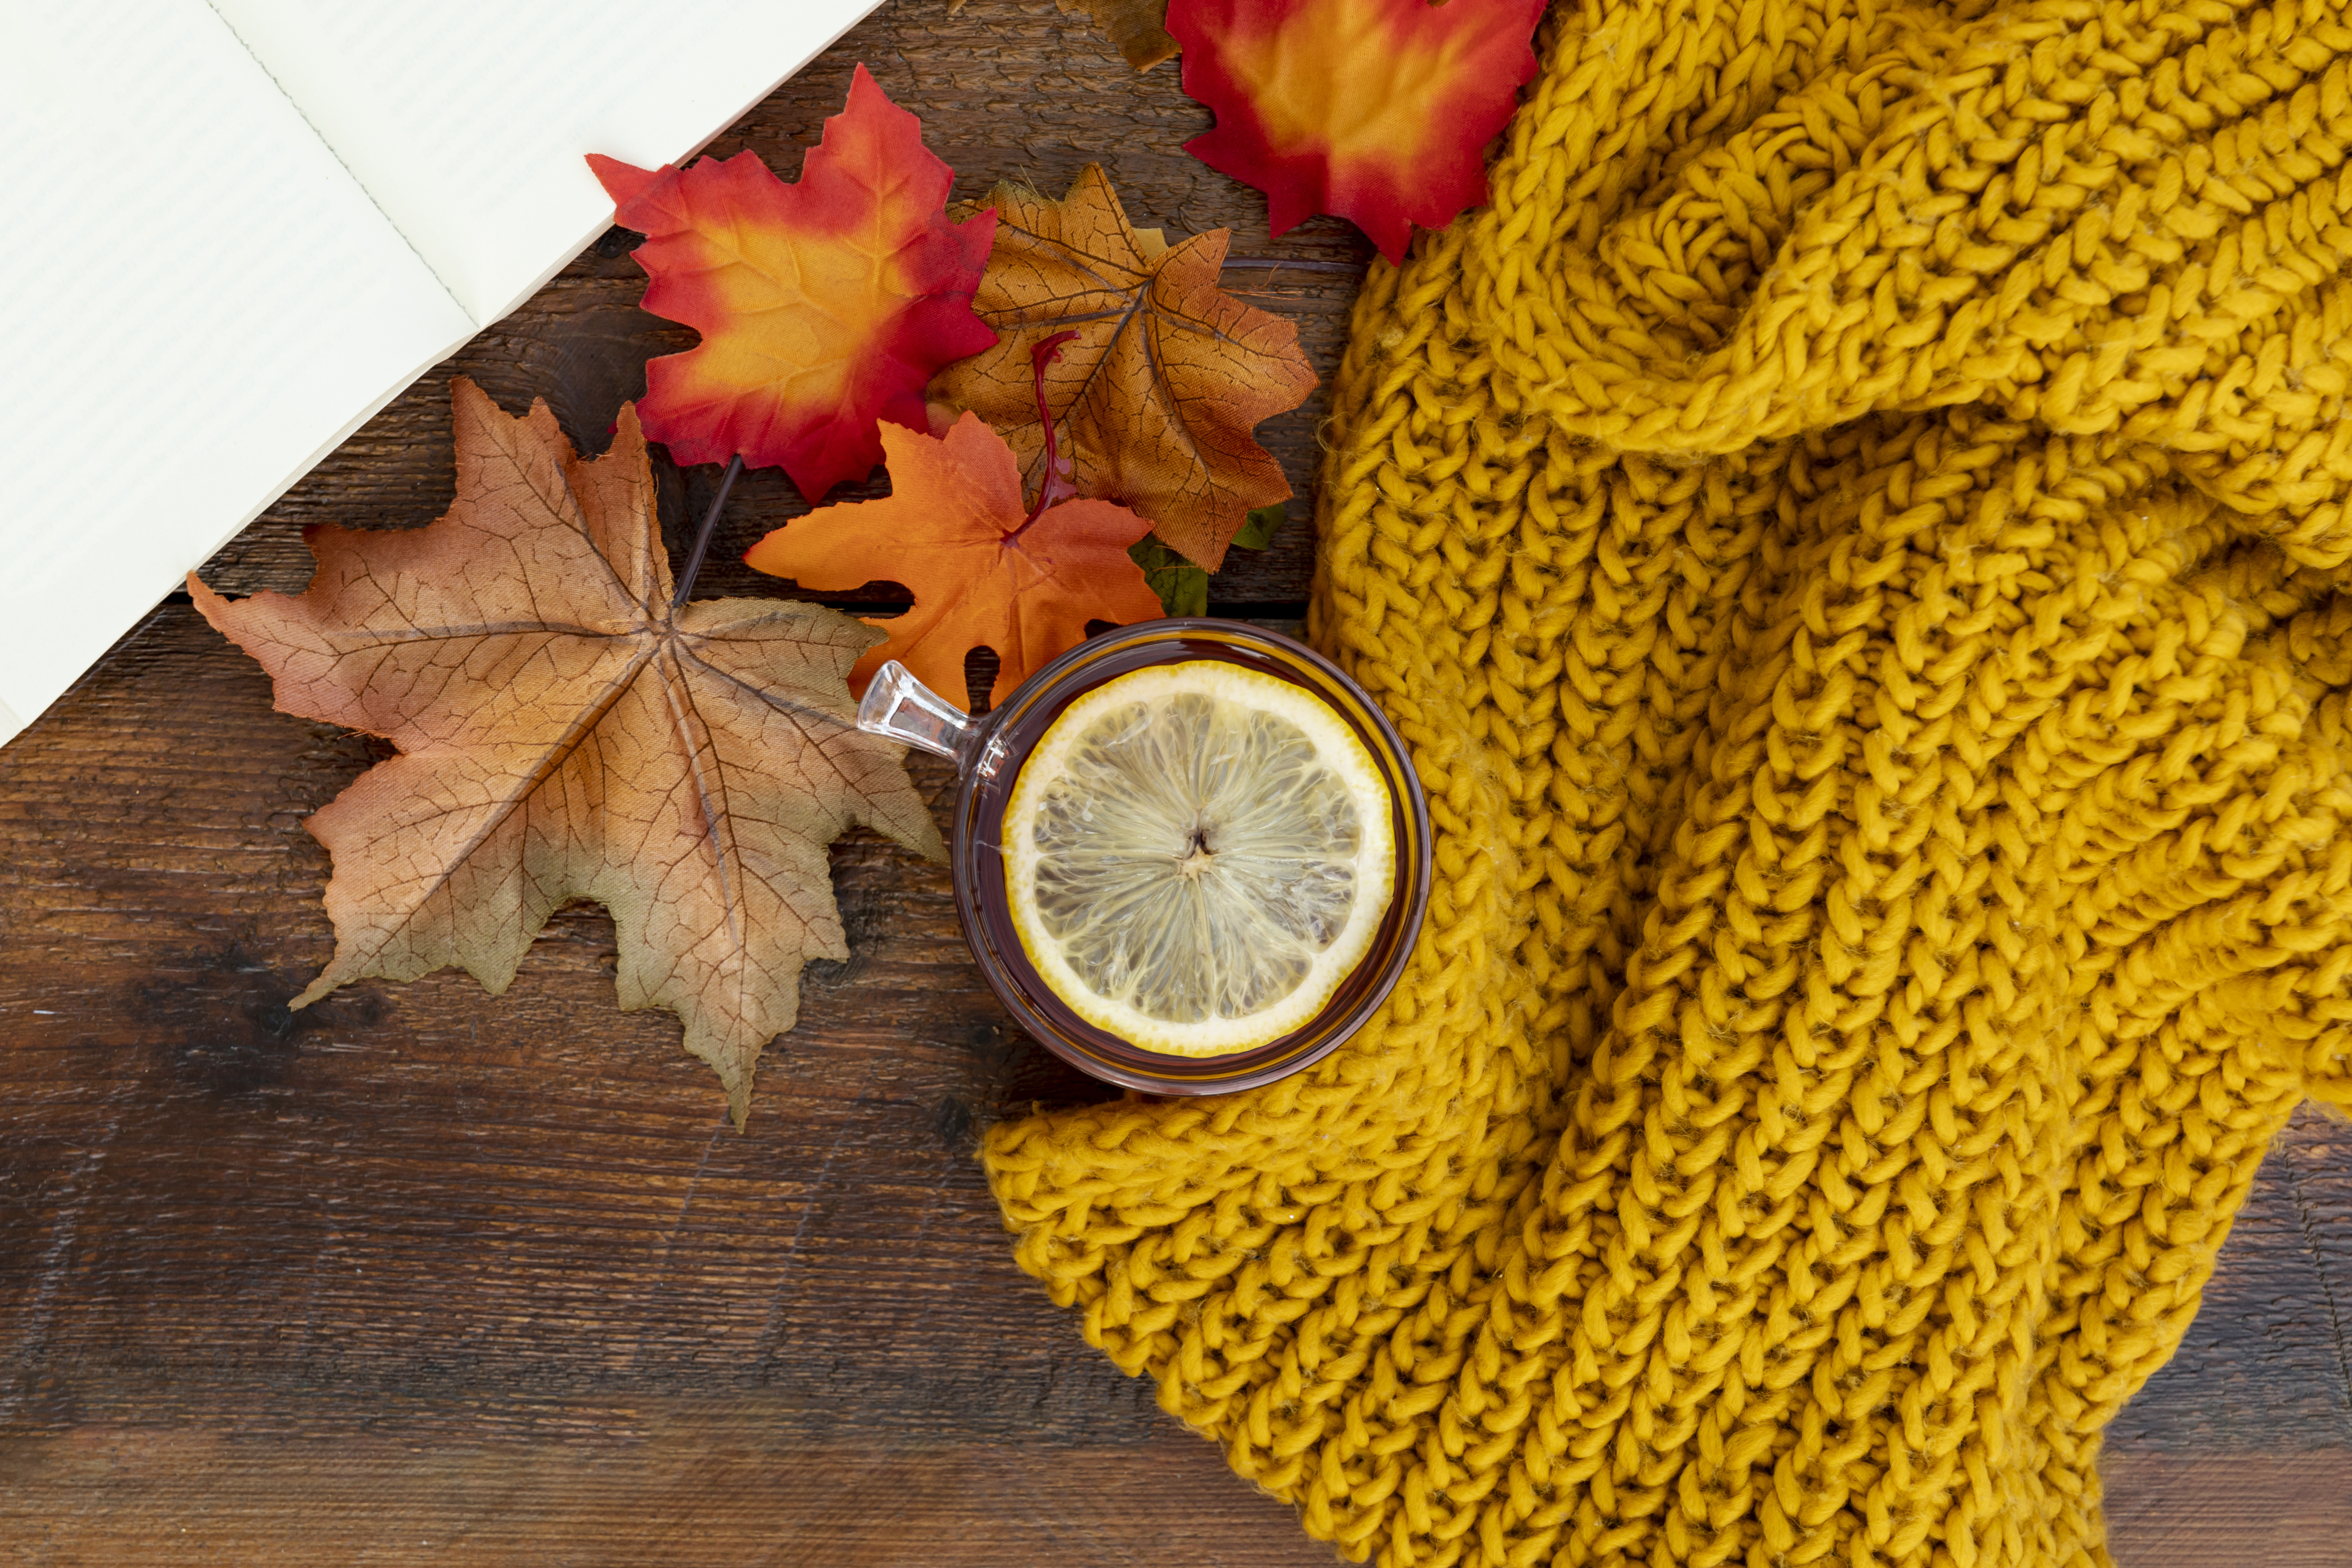 Itt a ruhatár frissítés ideje, készülj velünk az őszre!